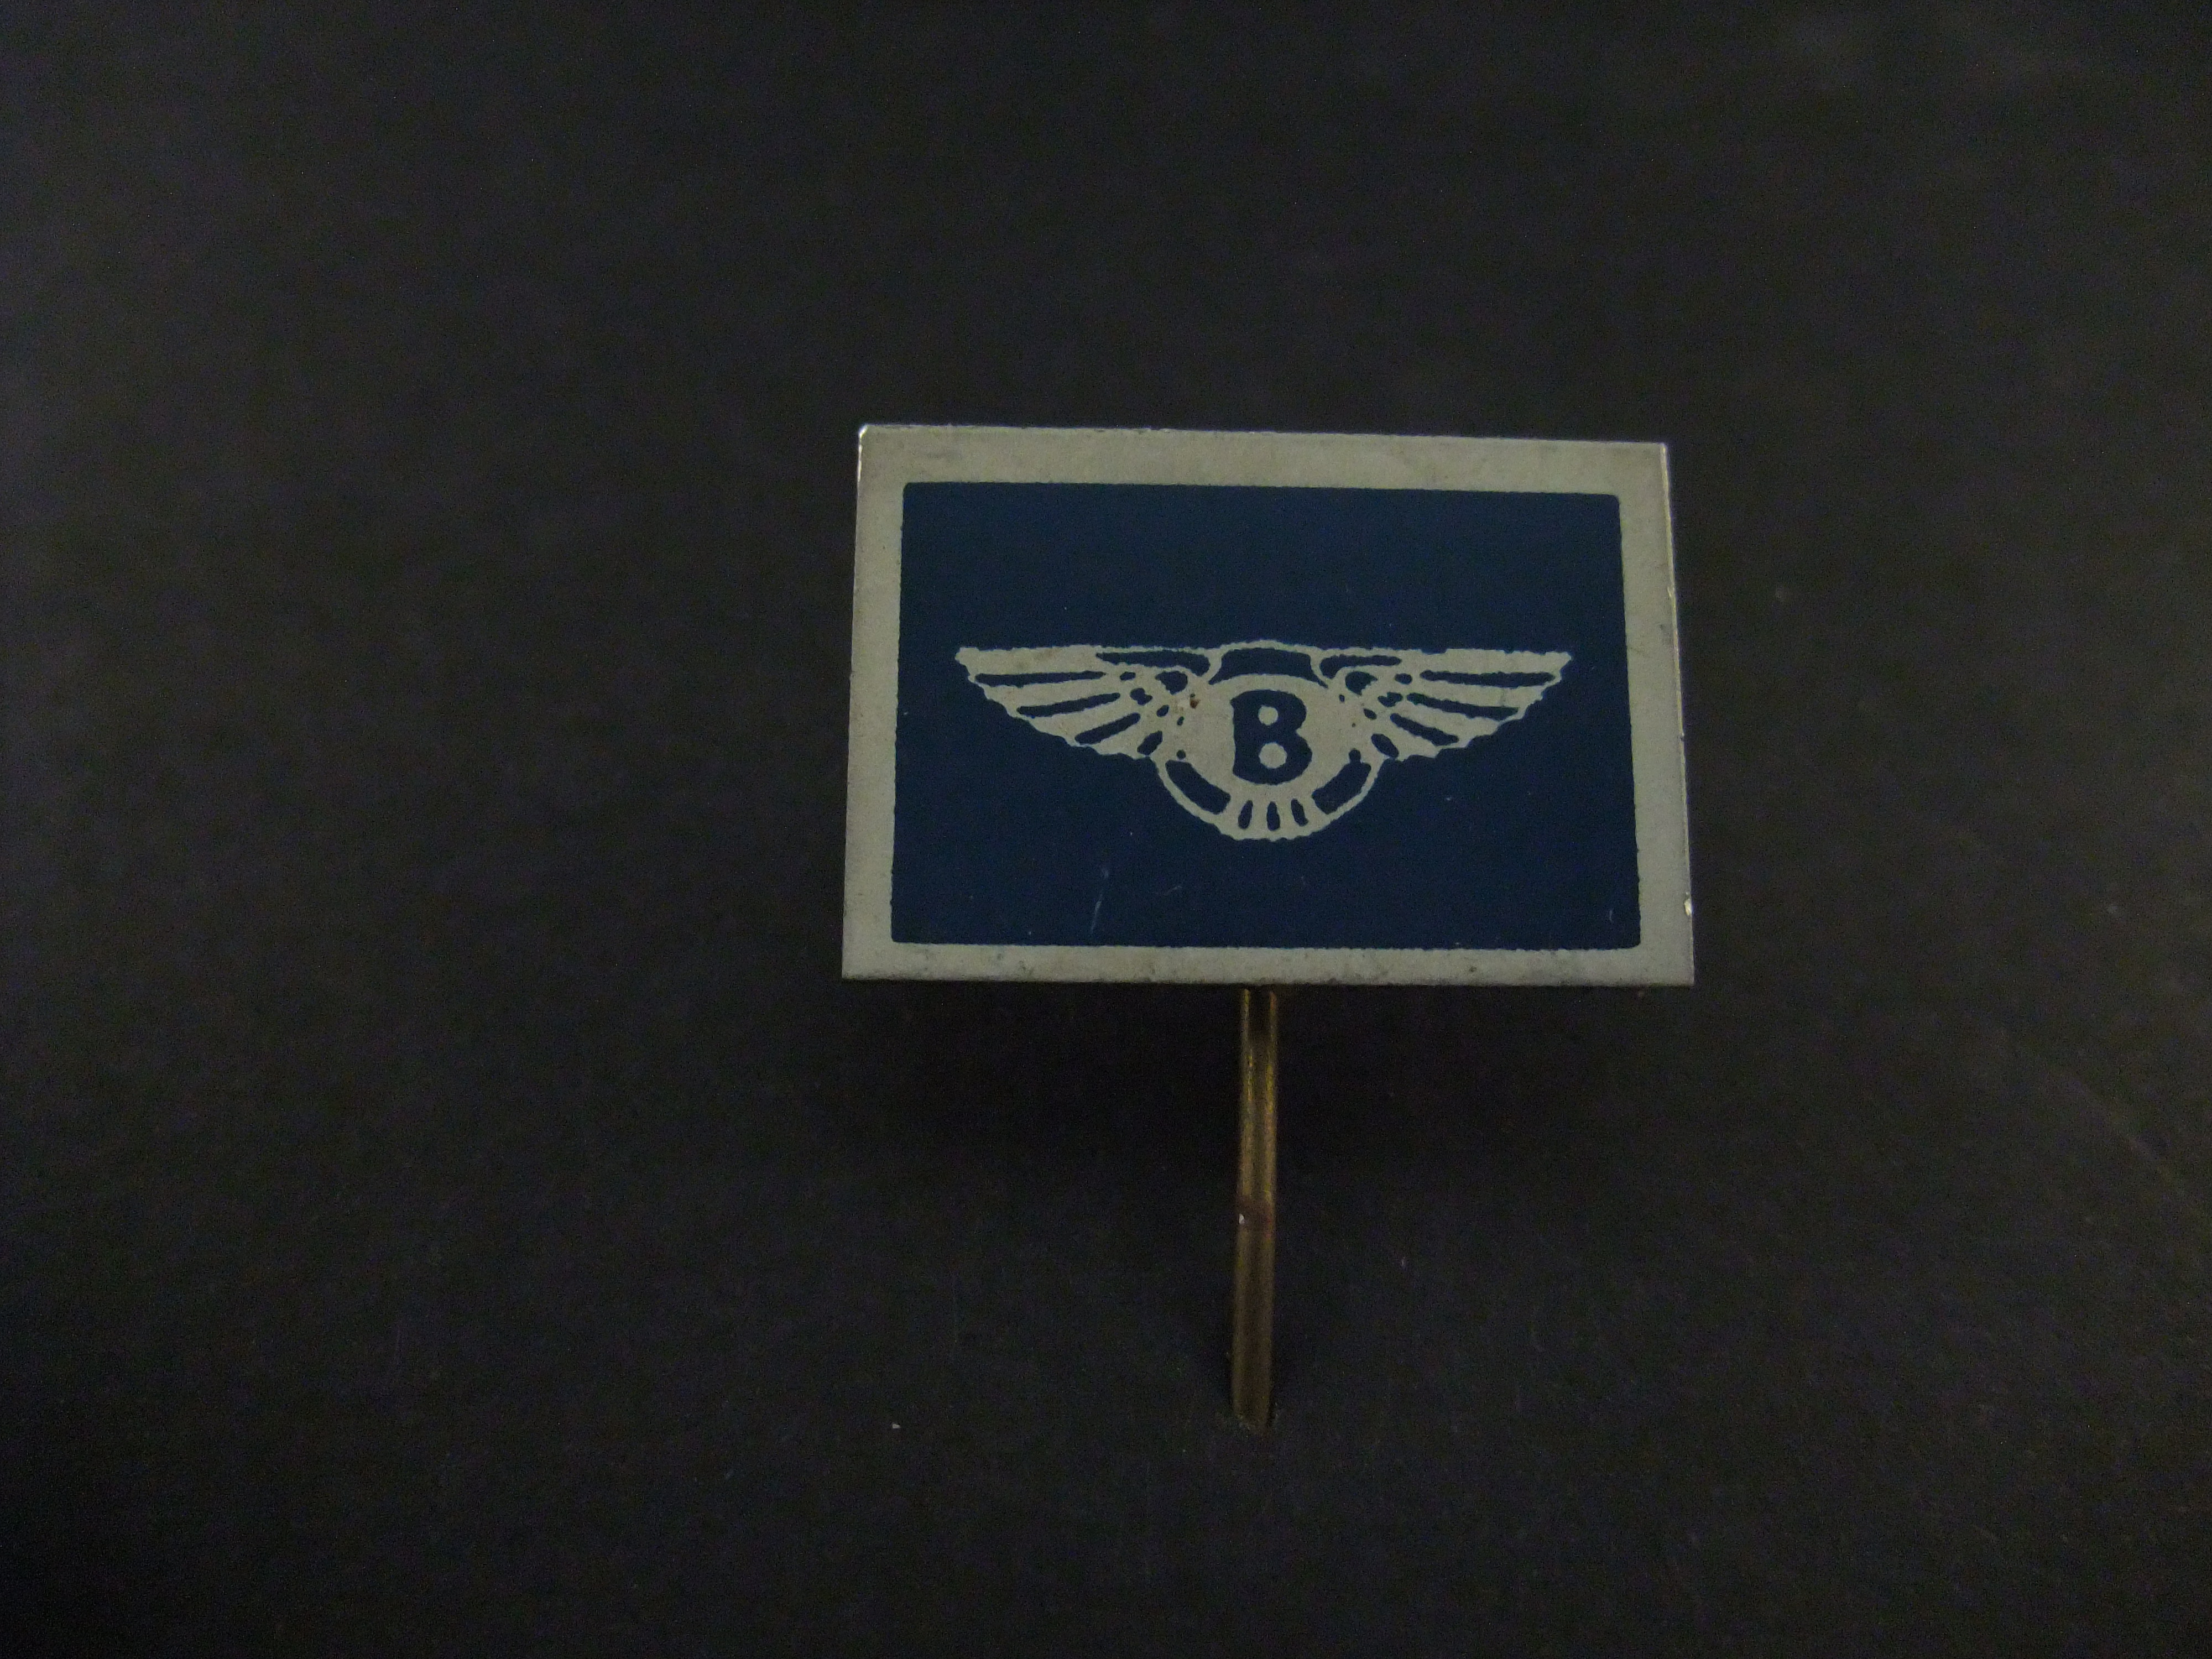 Bentley Britse fabrikant van luxueuze automobielen, logo blauw